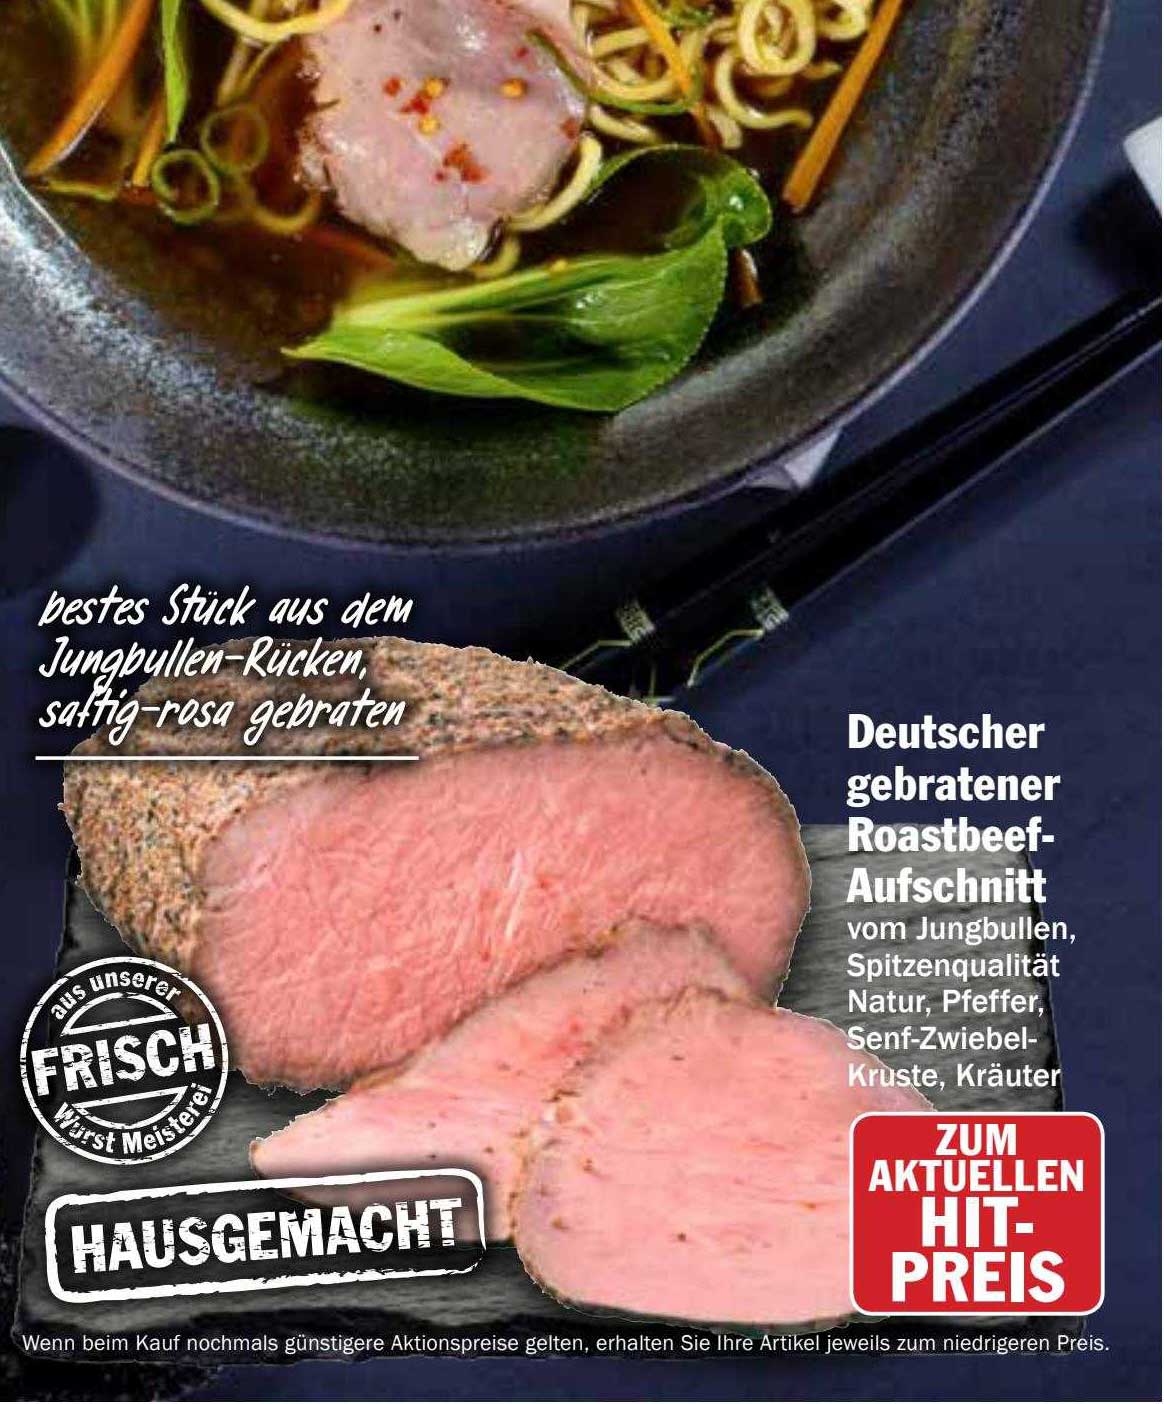 Deutscher Gebratener Roastbeef-aufschnitt Angebot bei Hit Markt